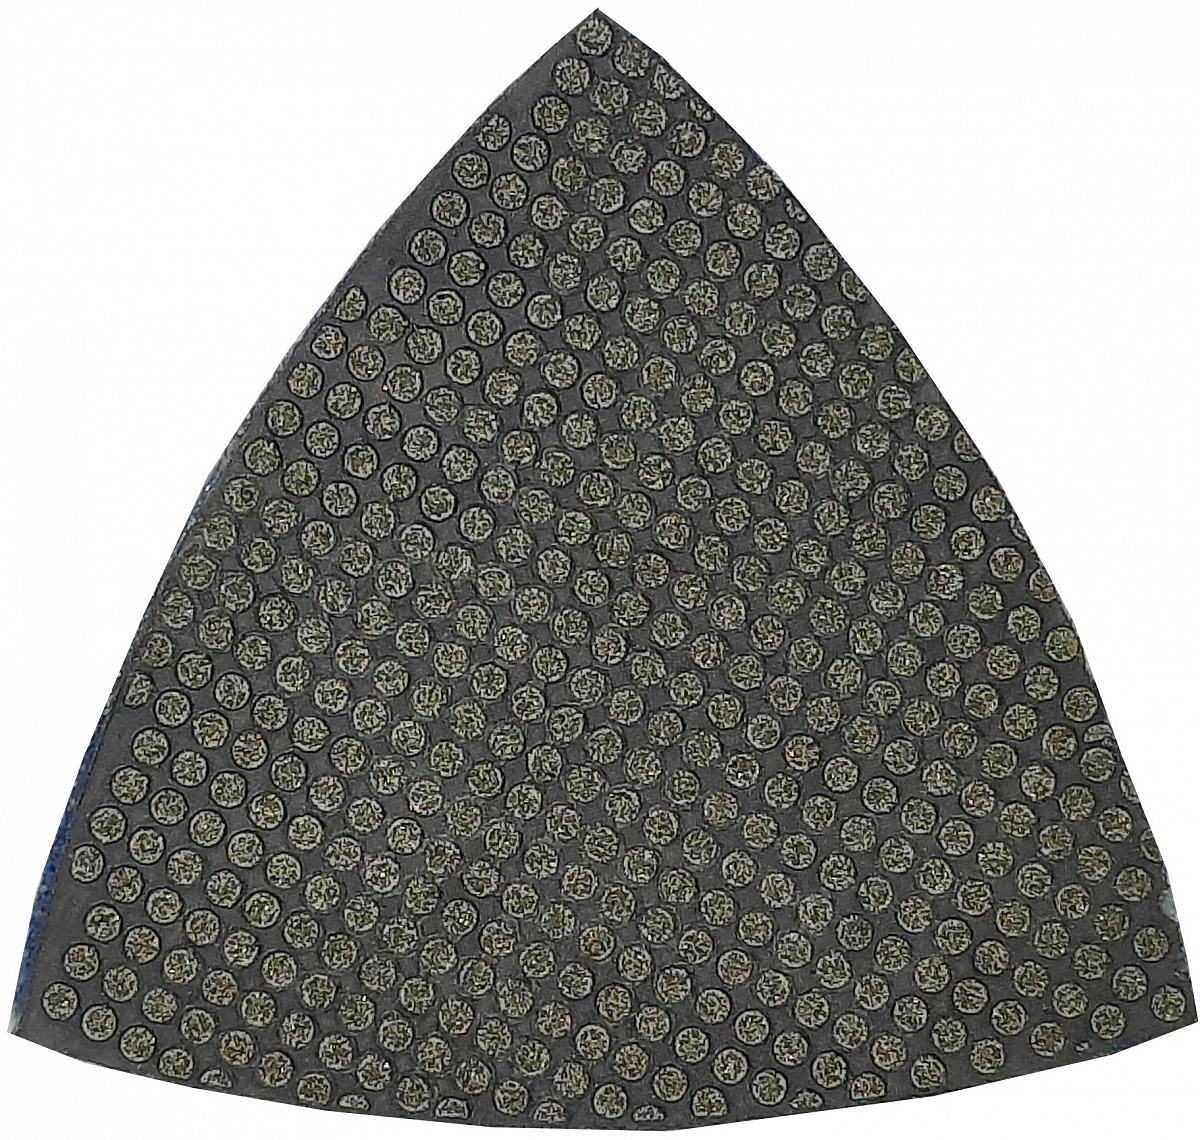 Hilberg алмазный шлифовальный лист (АШЛ) серия Ceramic